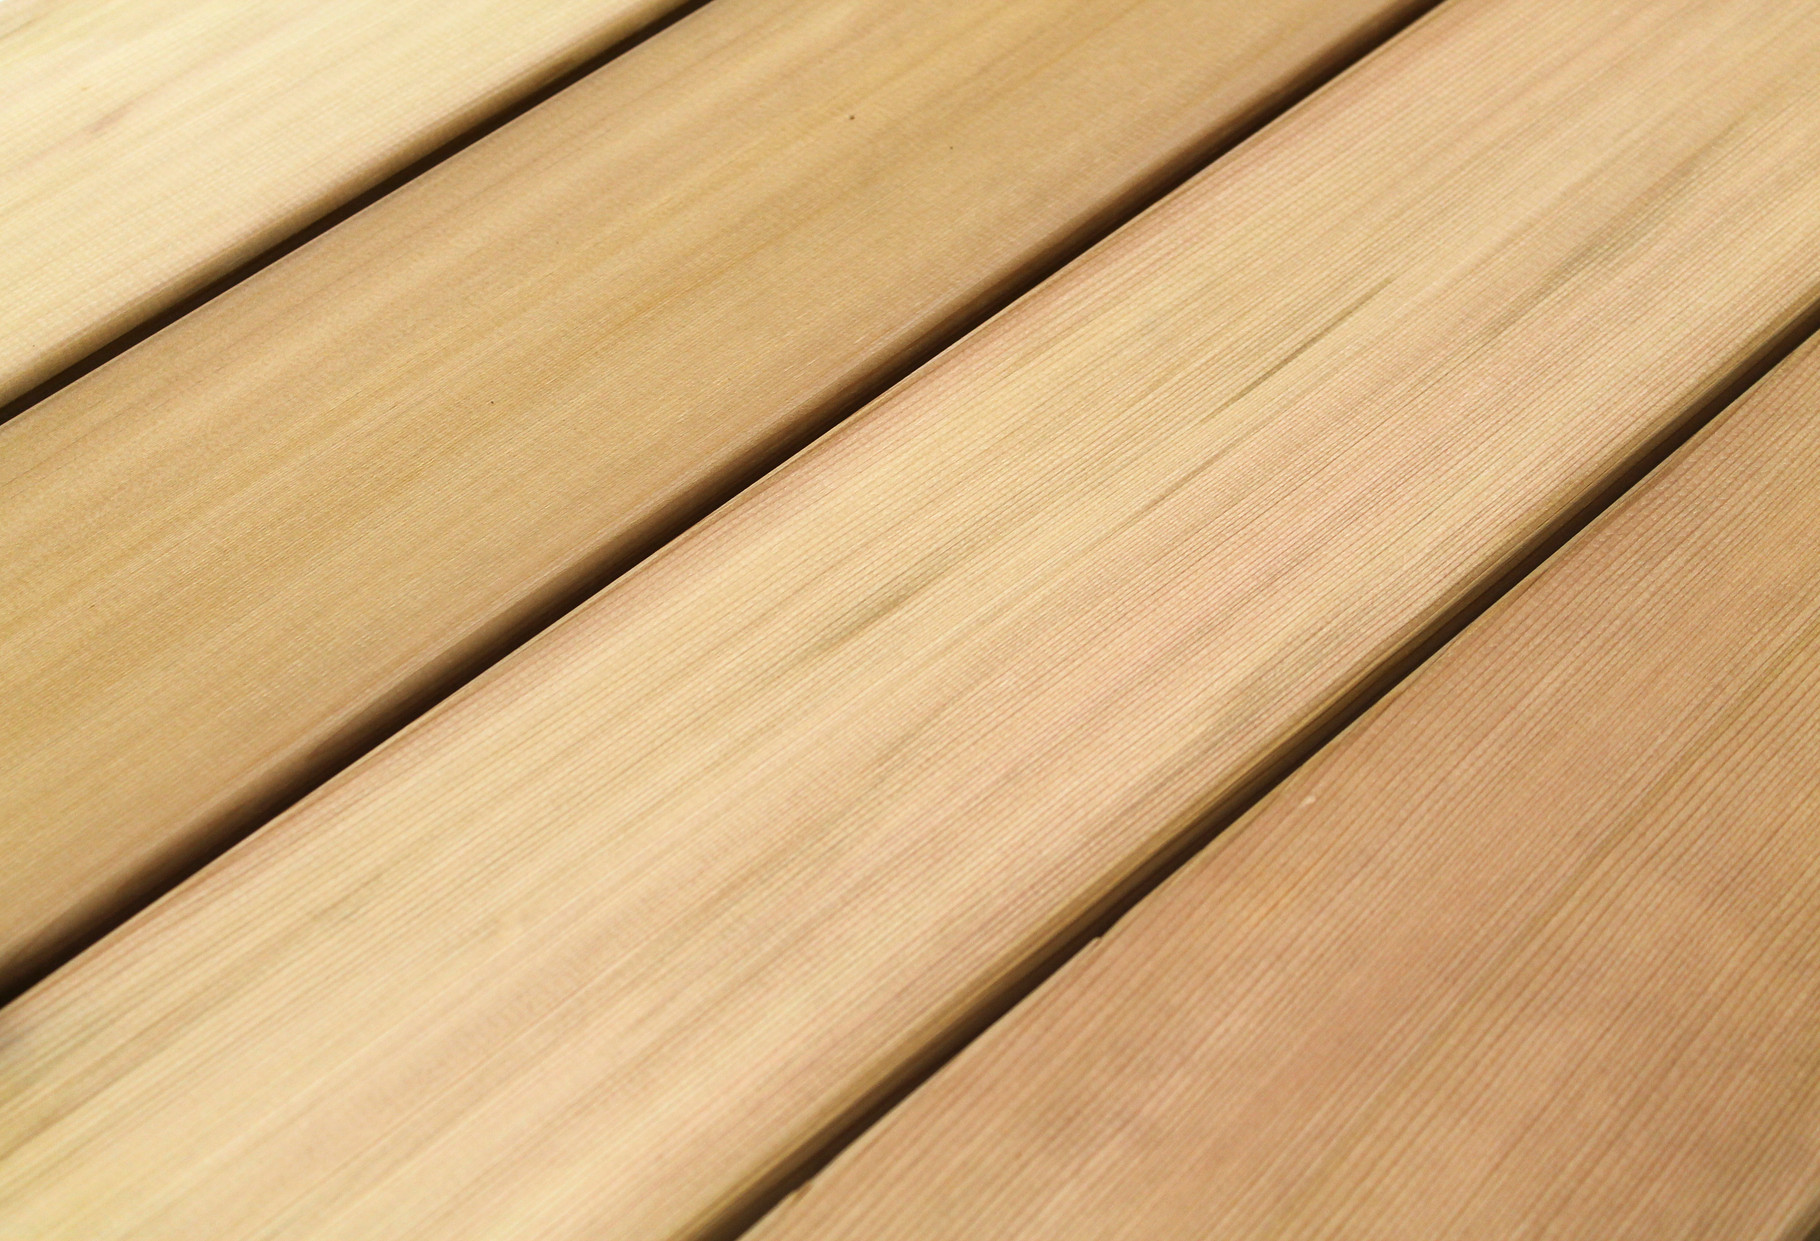 Western Red Cedar Holzdielen schräg geschnitten Zedernholz 550x93x18mm Holzbrett 